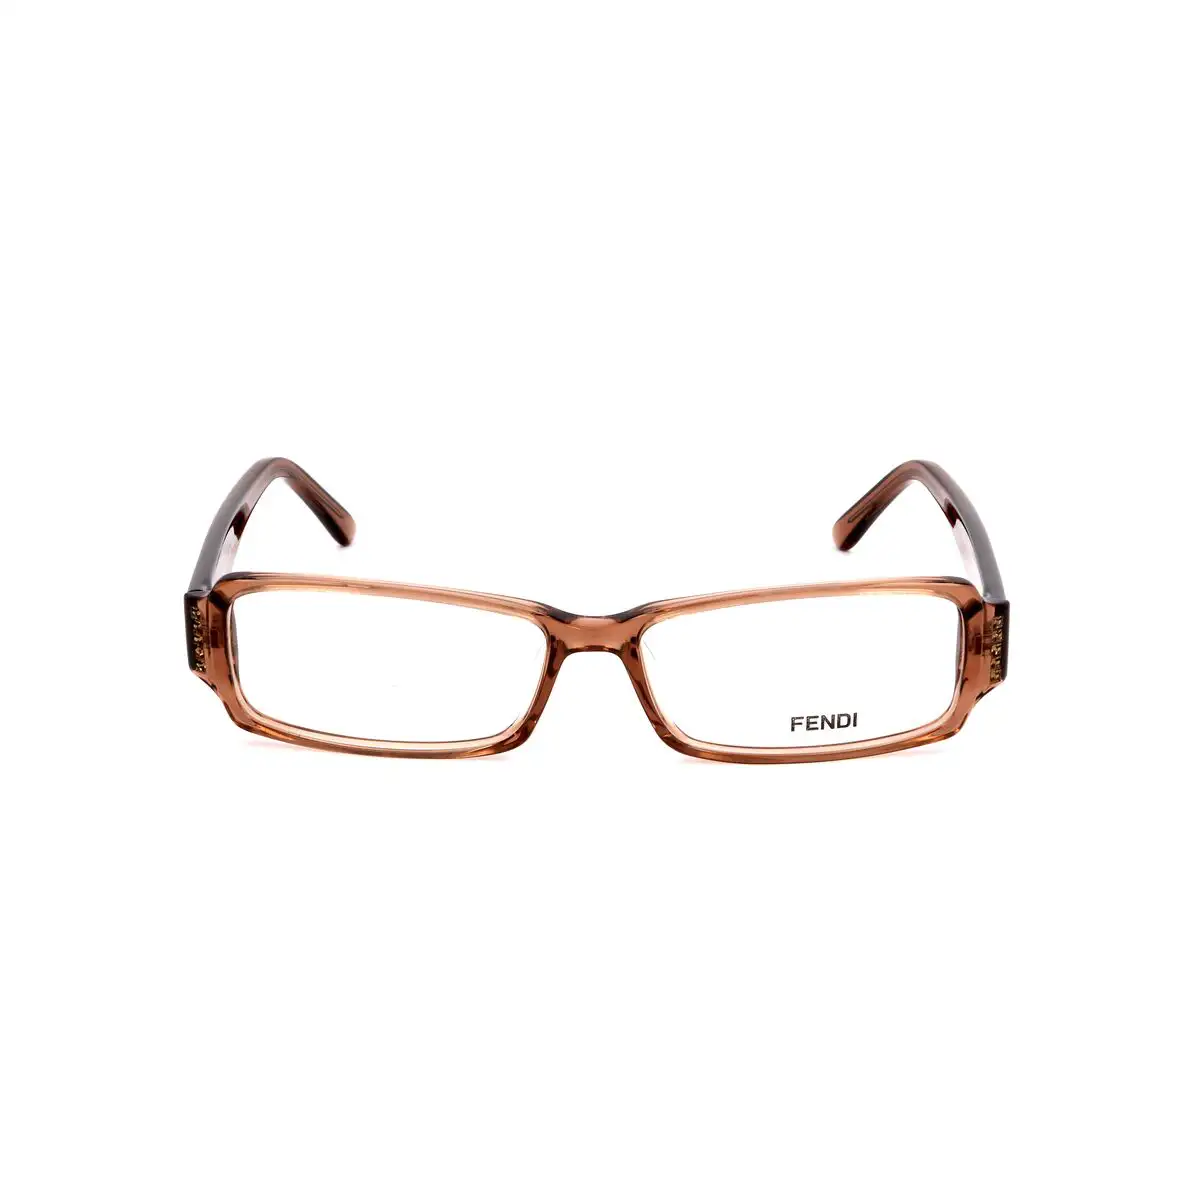 Monture de lunettes femme fendi fendi 850 256 marron_2261. DIAYTAR SENEGAL - Votre Portail Vers l'Exclusivité. Explorez notre boutique en ligne pour découvrir des produits uniques et raffinés, conçus pour ceux qui recherchent l'excellence.